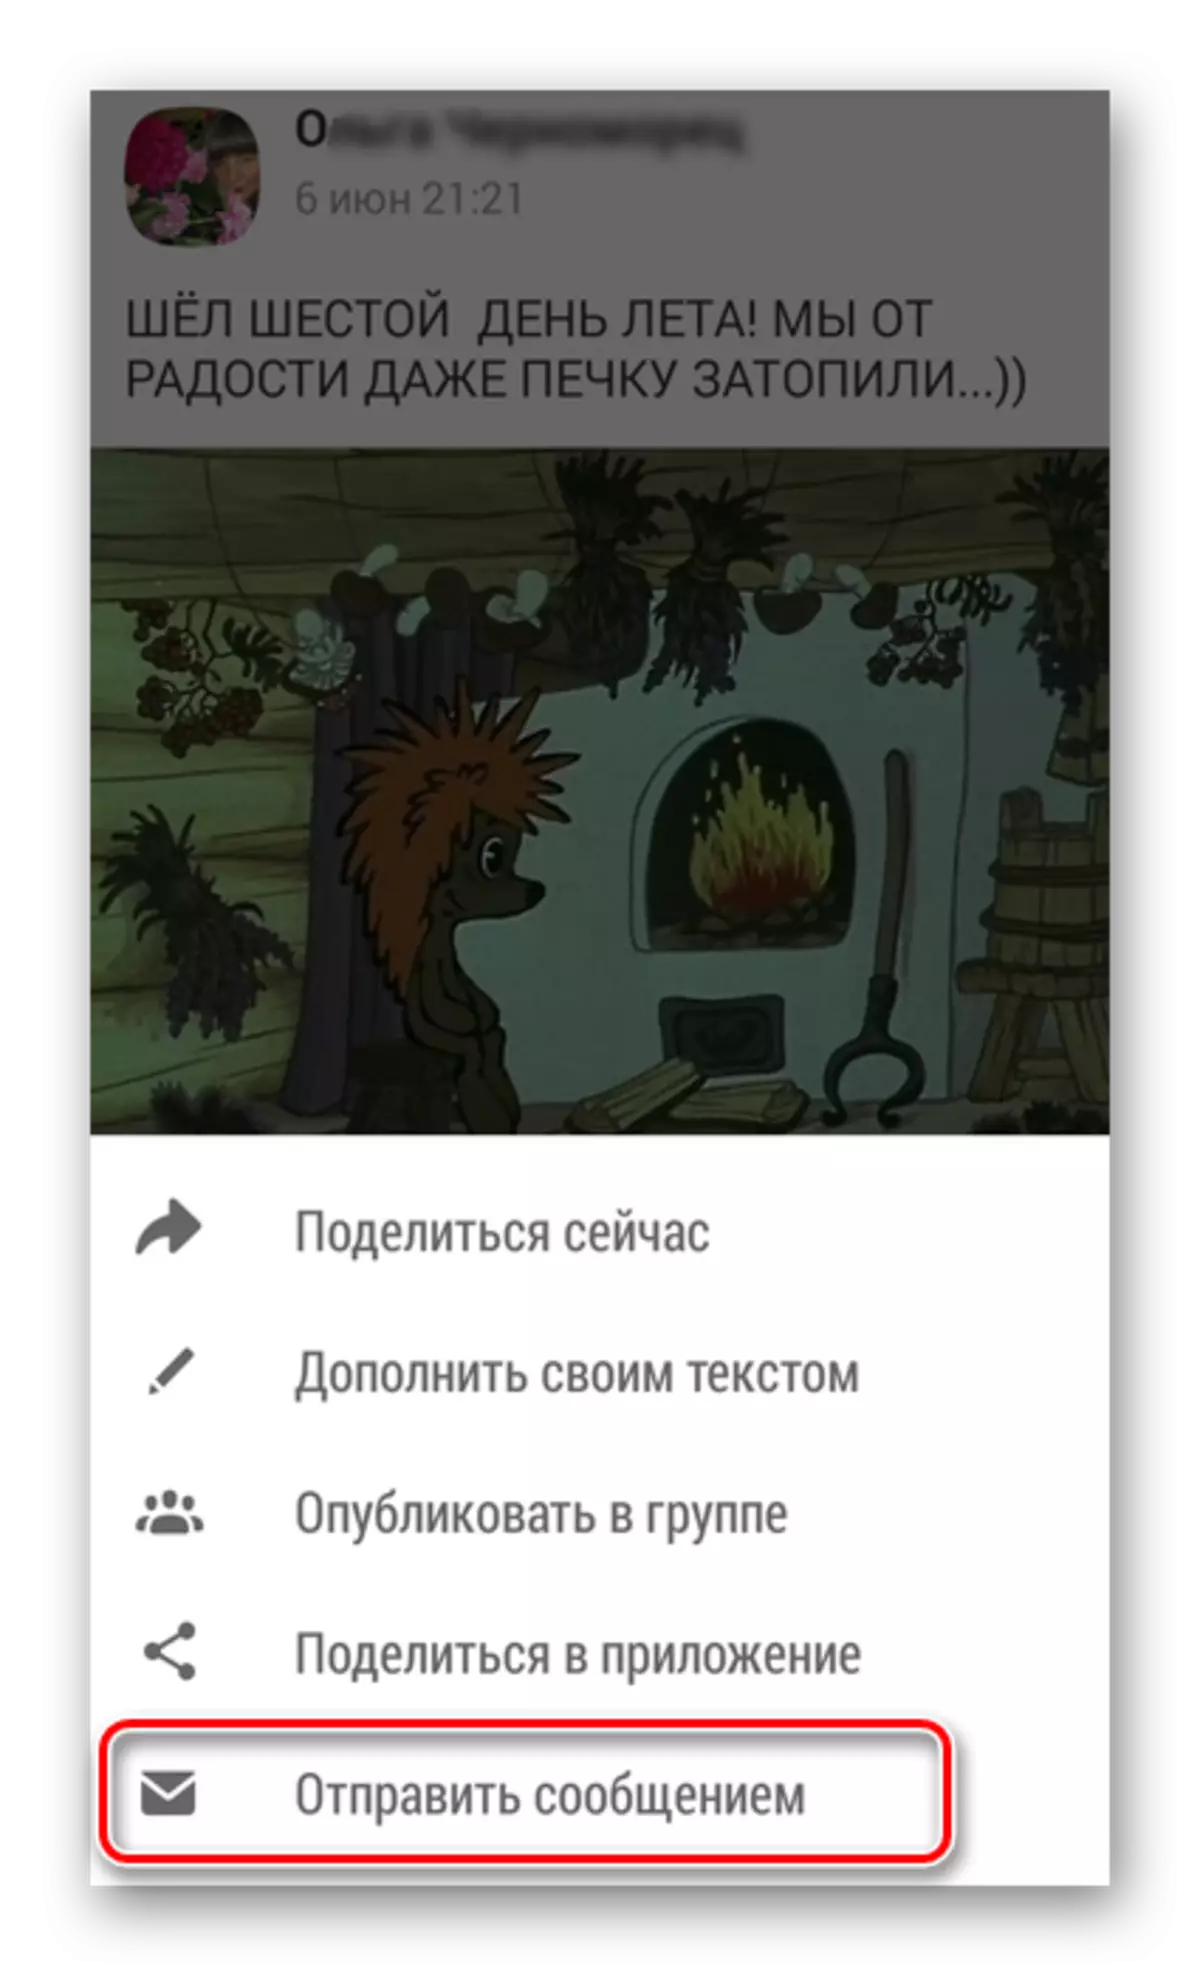 부록 odnoklassniki에서 메시지를 보냅니다